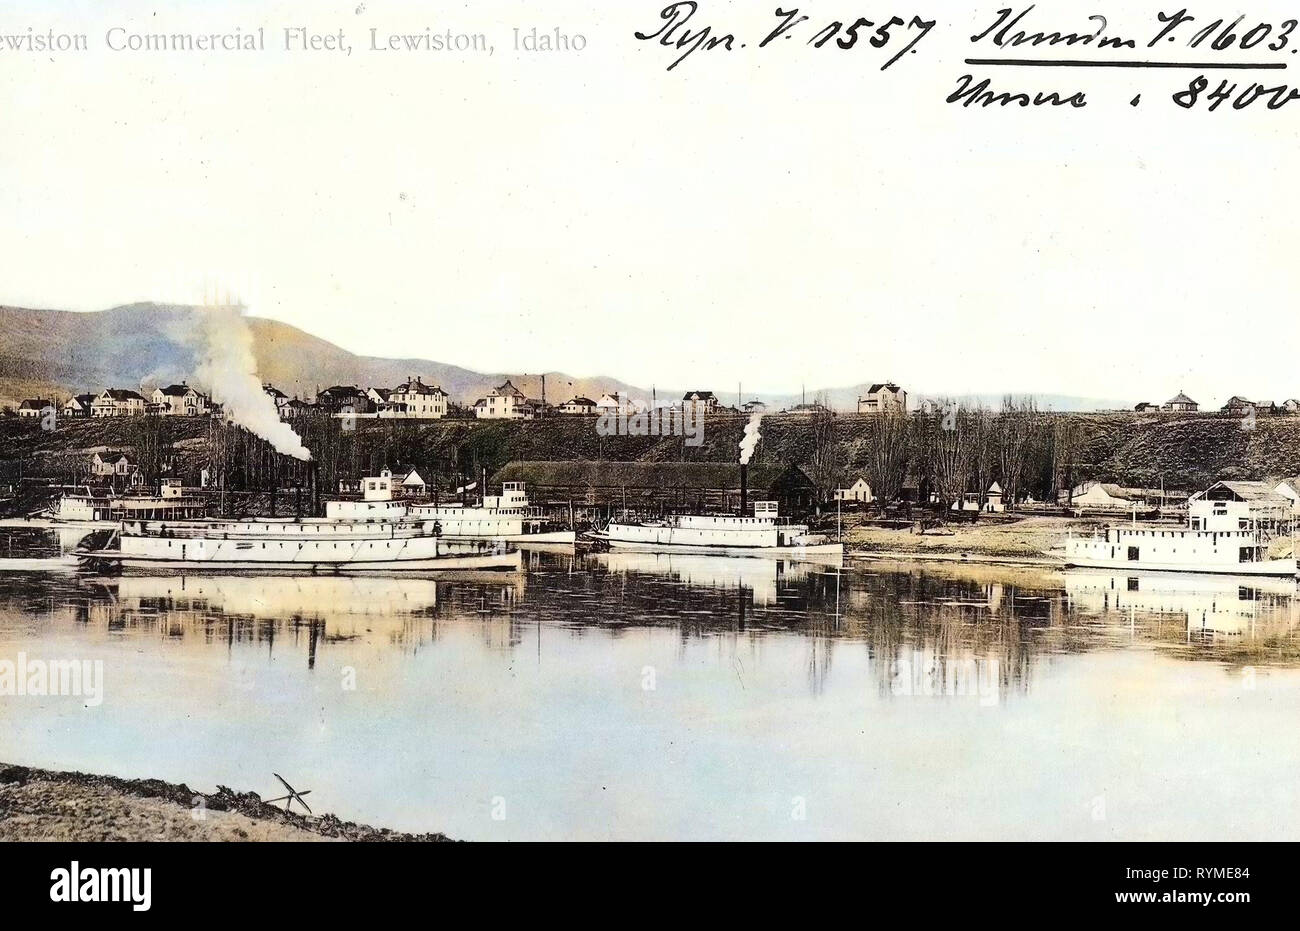 Bateaux à aubes de la United States, les rivières de l'Idaho, 1906, New York, Lewiston, Lewiston flotte commerciale Banque D'Images